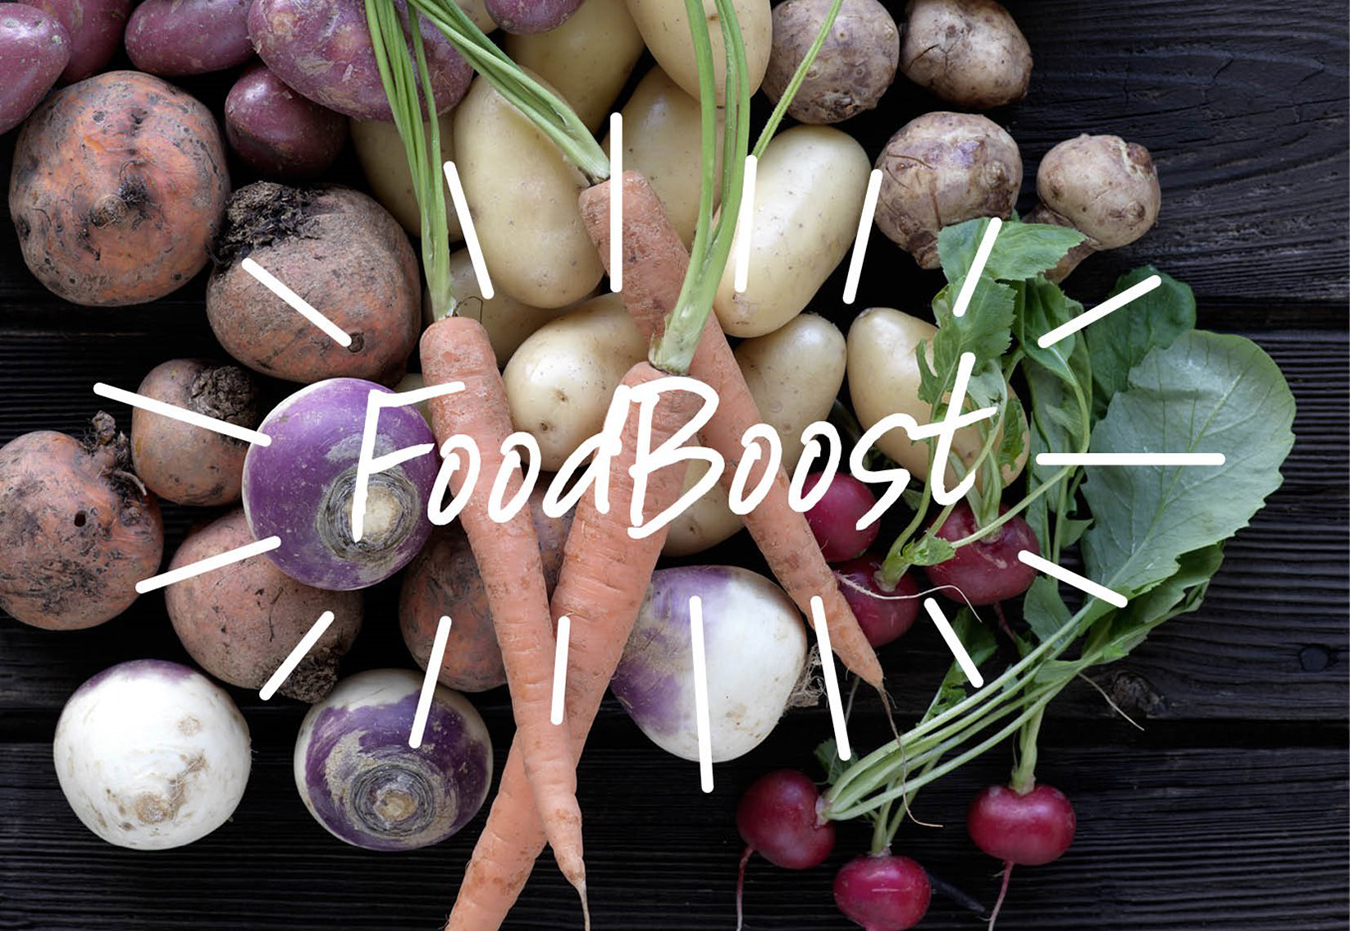 Morötter, rotsaker och grönsaker på bild, med ordet FoodBoost skrivet framför.